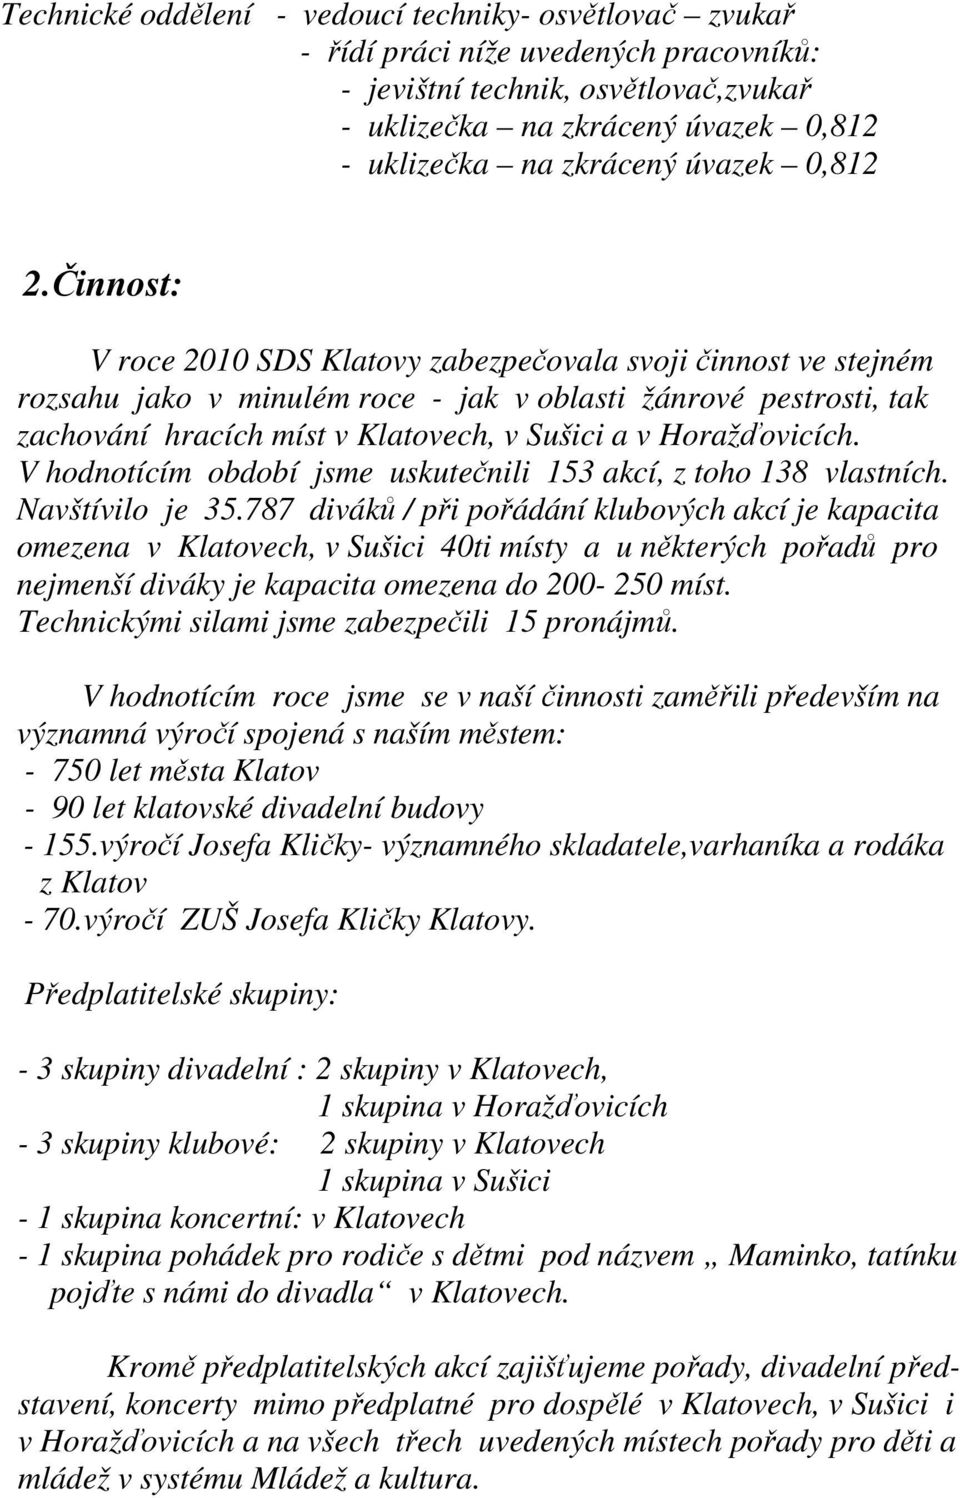 Činnost: V roce 2010 SDS Klatovy zabezpečovala svoji činnost ve stejném rozsahu jako v minulém roce - jak v oblasti žánrové pestrosti, tak zachování hracích míst v Klatovech, v Sušici a v